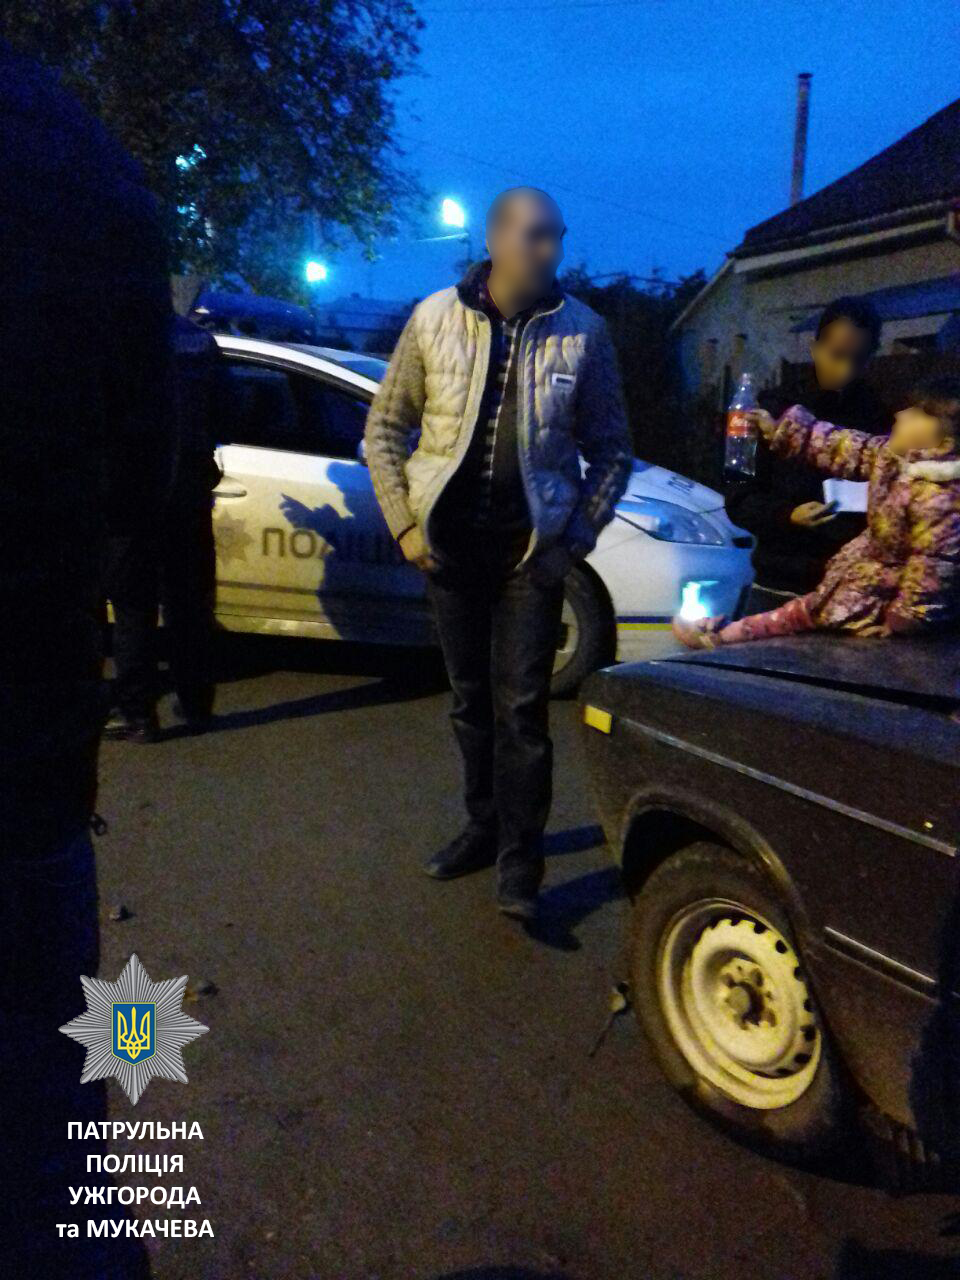 Вчора близько 4-ї години дня ужгородські патрульні отримали орієнтування на автомобіль ВАЗ 2106. Автівка була помічена під час крадіжки телевізора у місті Чоп кількома годинами раніше.